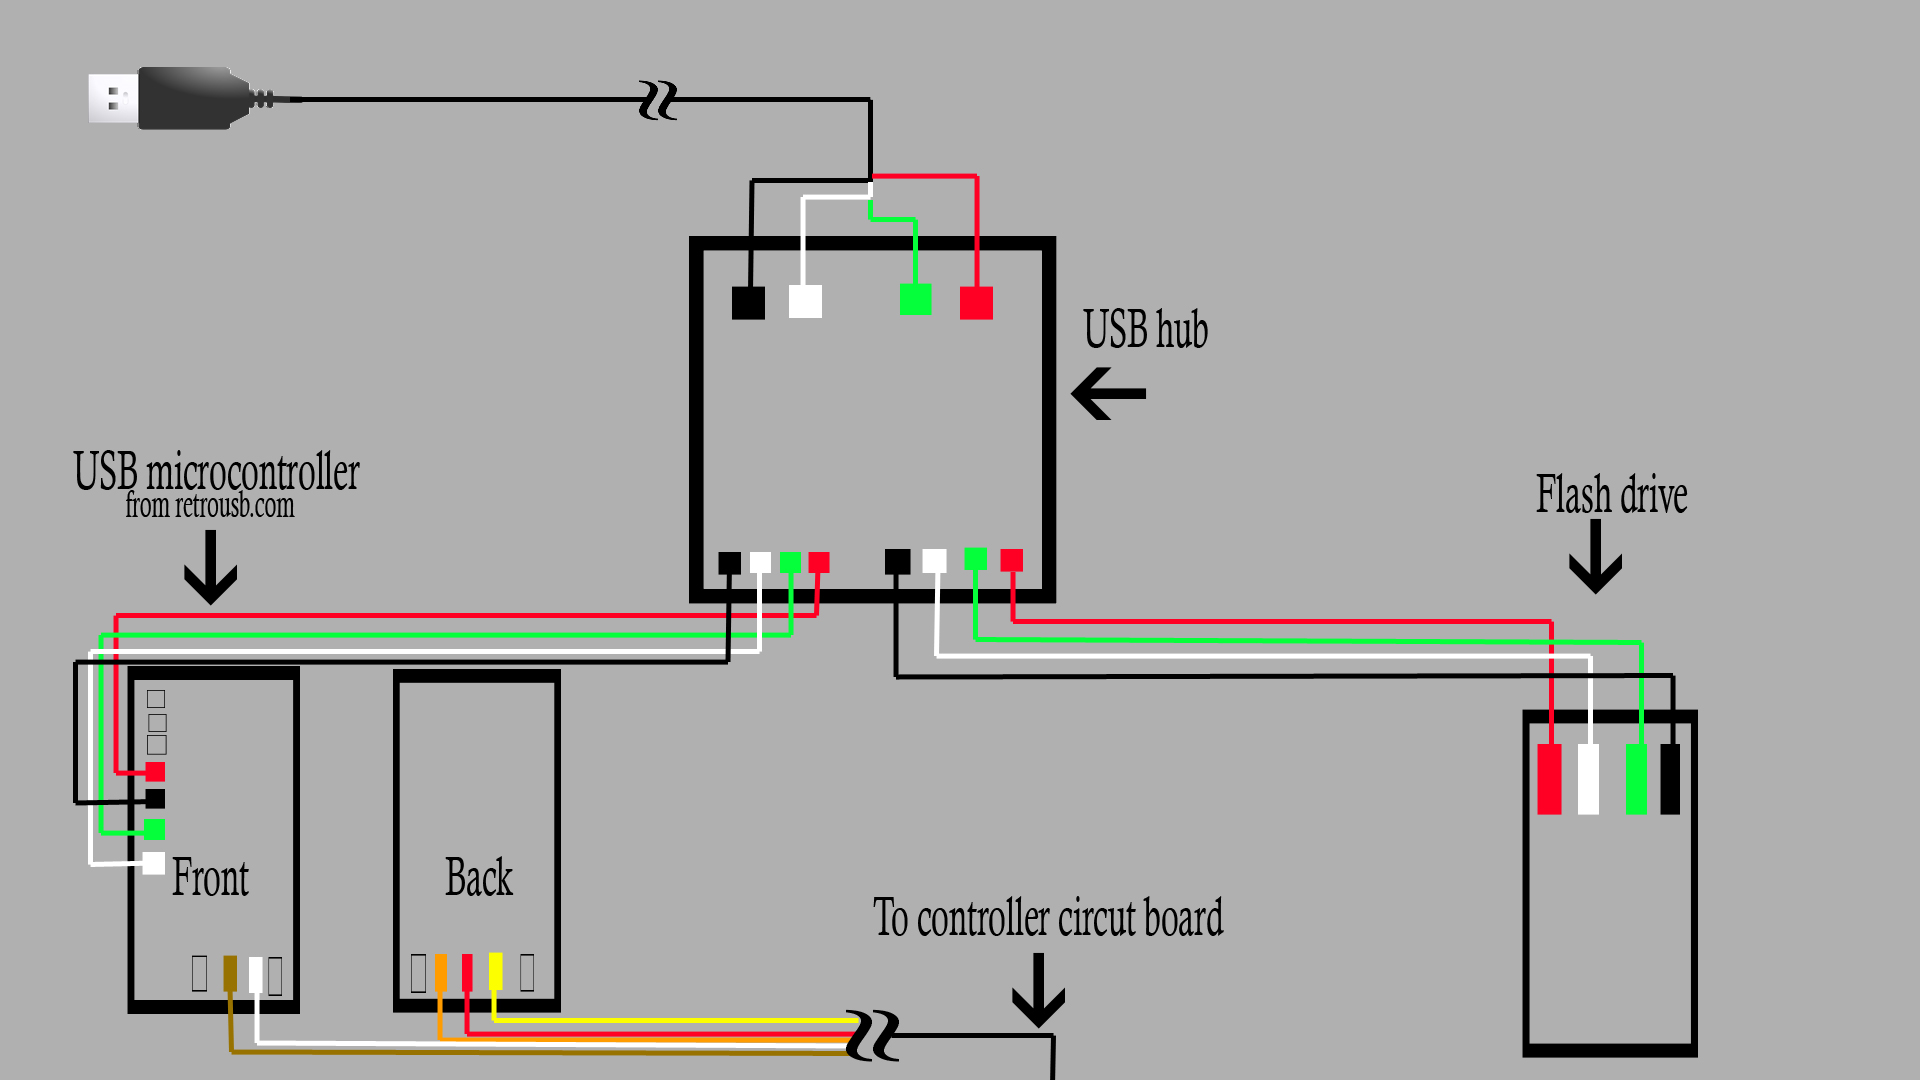 android speakerphone wiring diagram